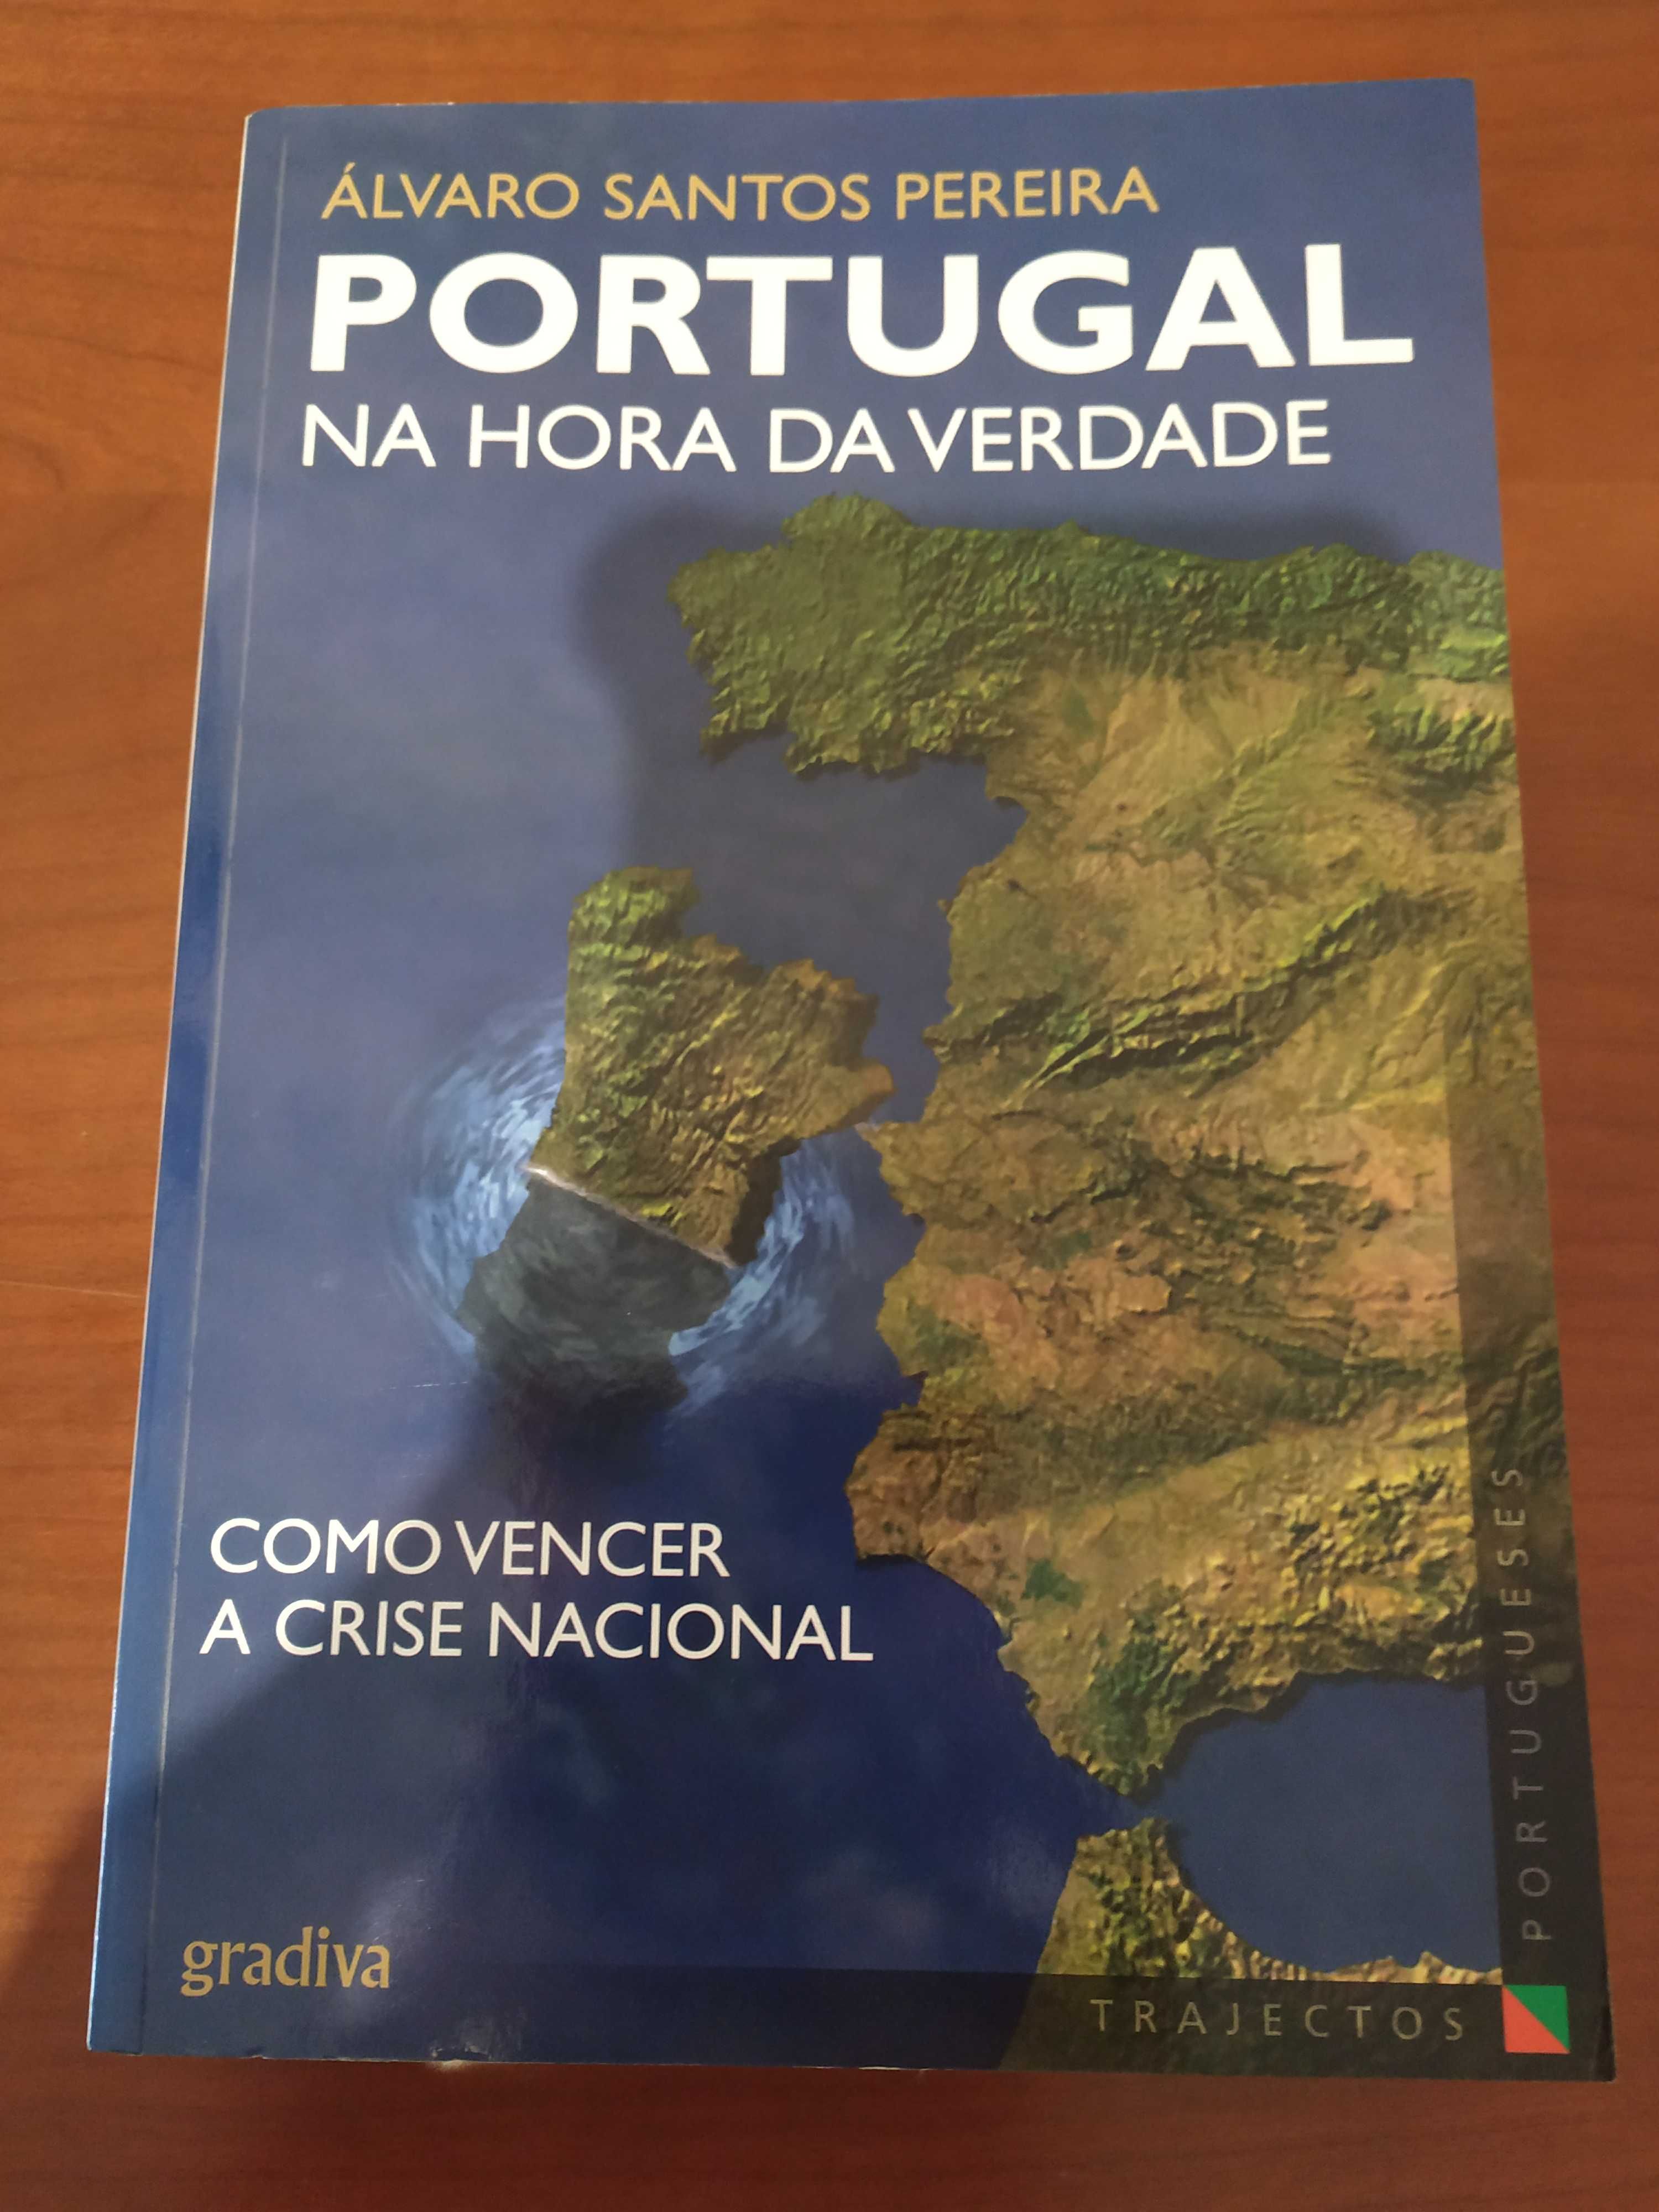 Livro "Portugal na Hora da Verdade"